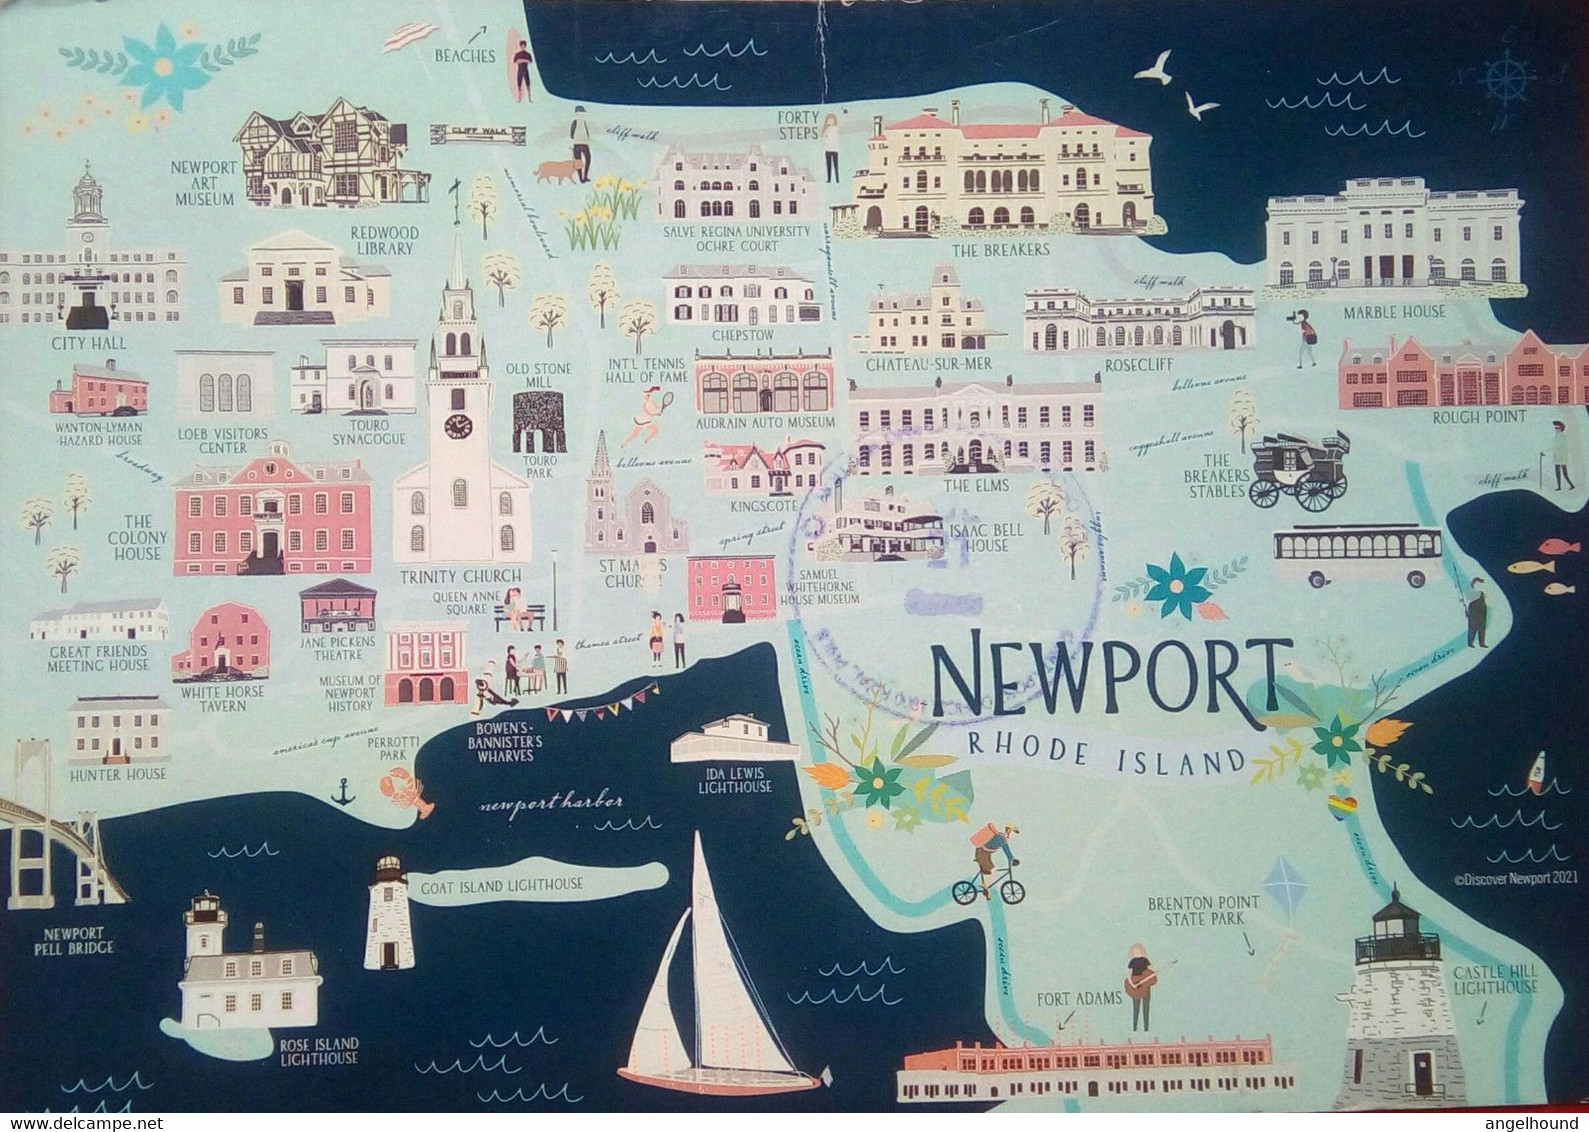 Newport, Rhode Island - Newport